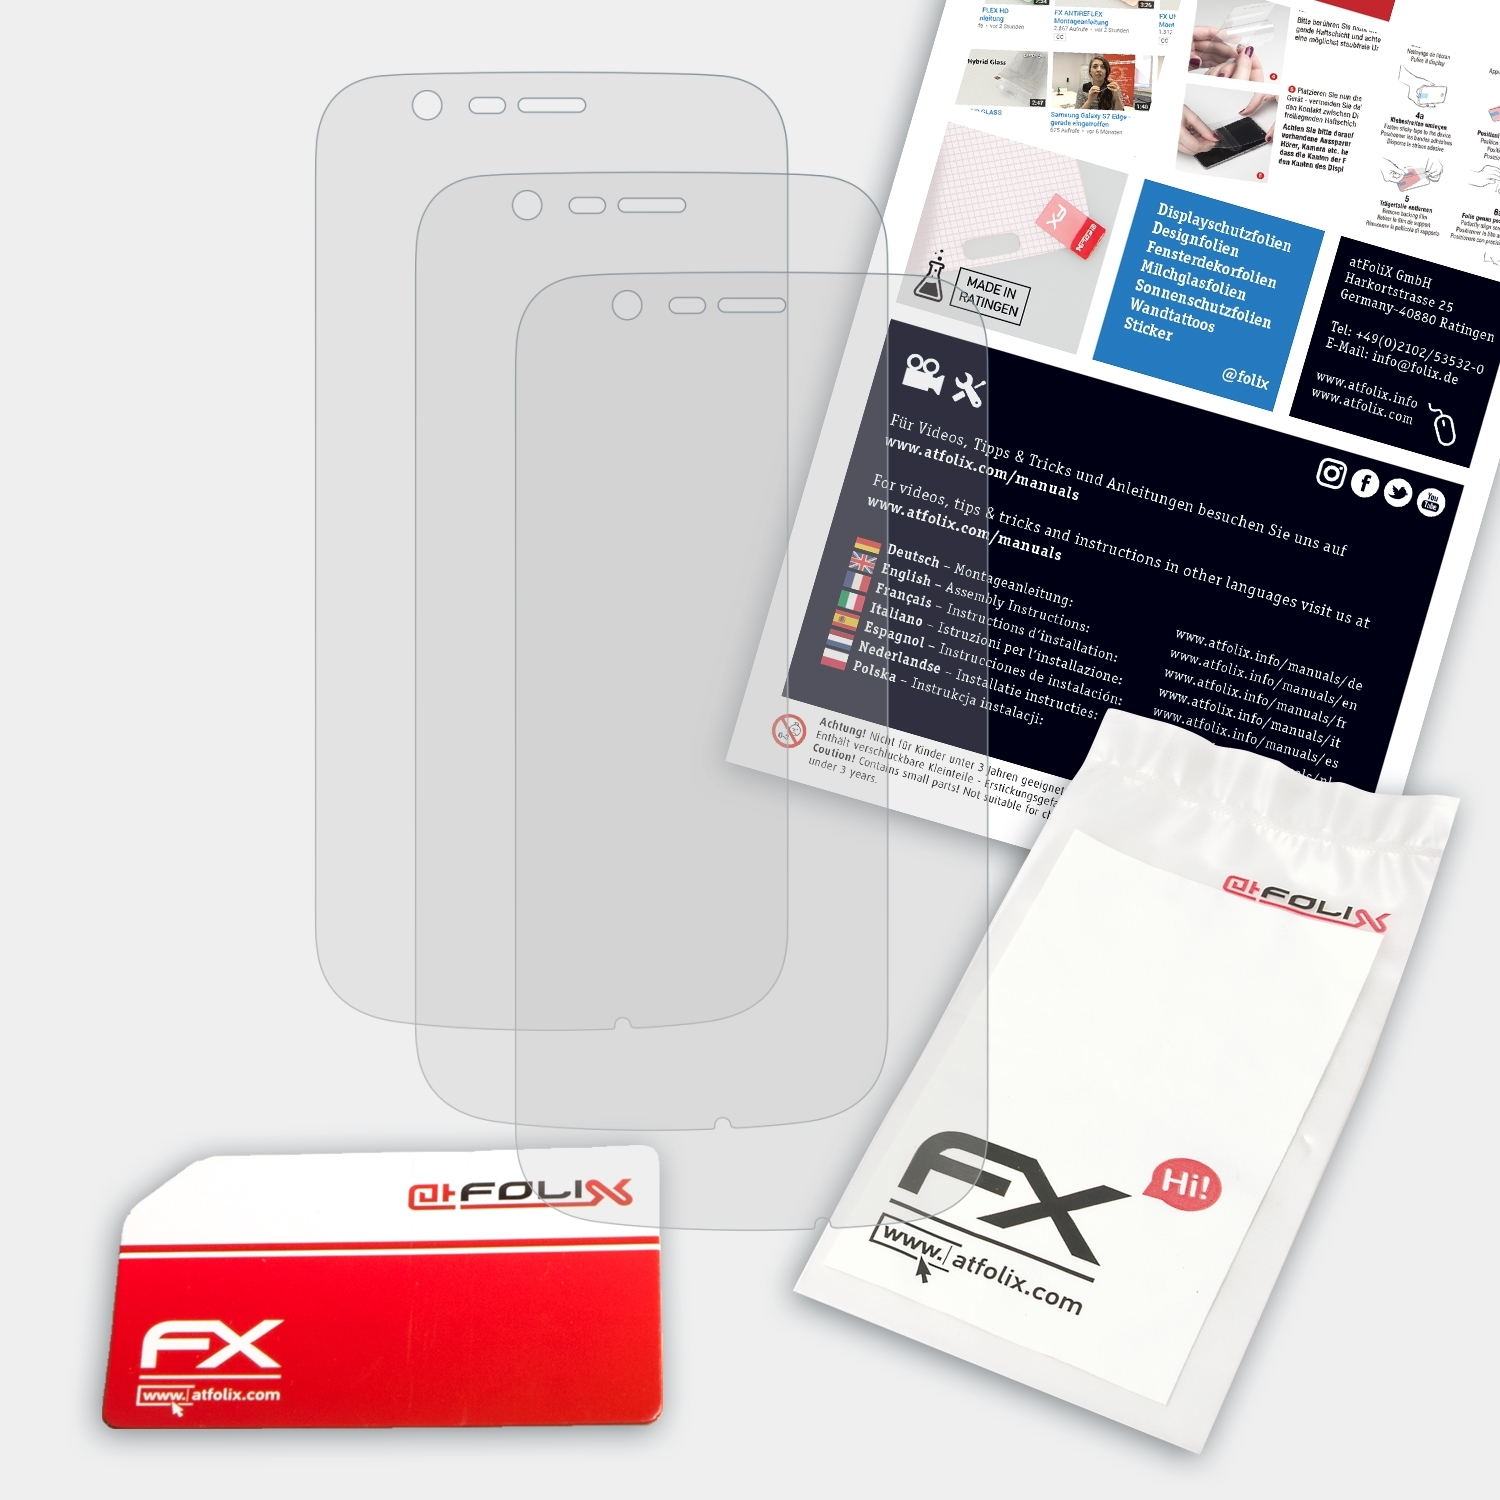 1) ATFOLIX Nokia Displayschutz(für 3x FX-Antireflex